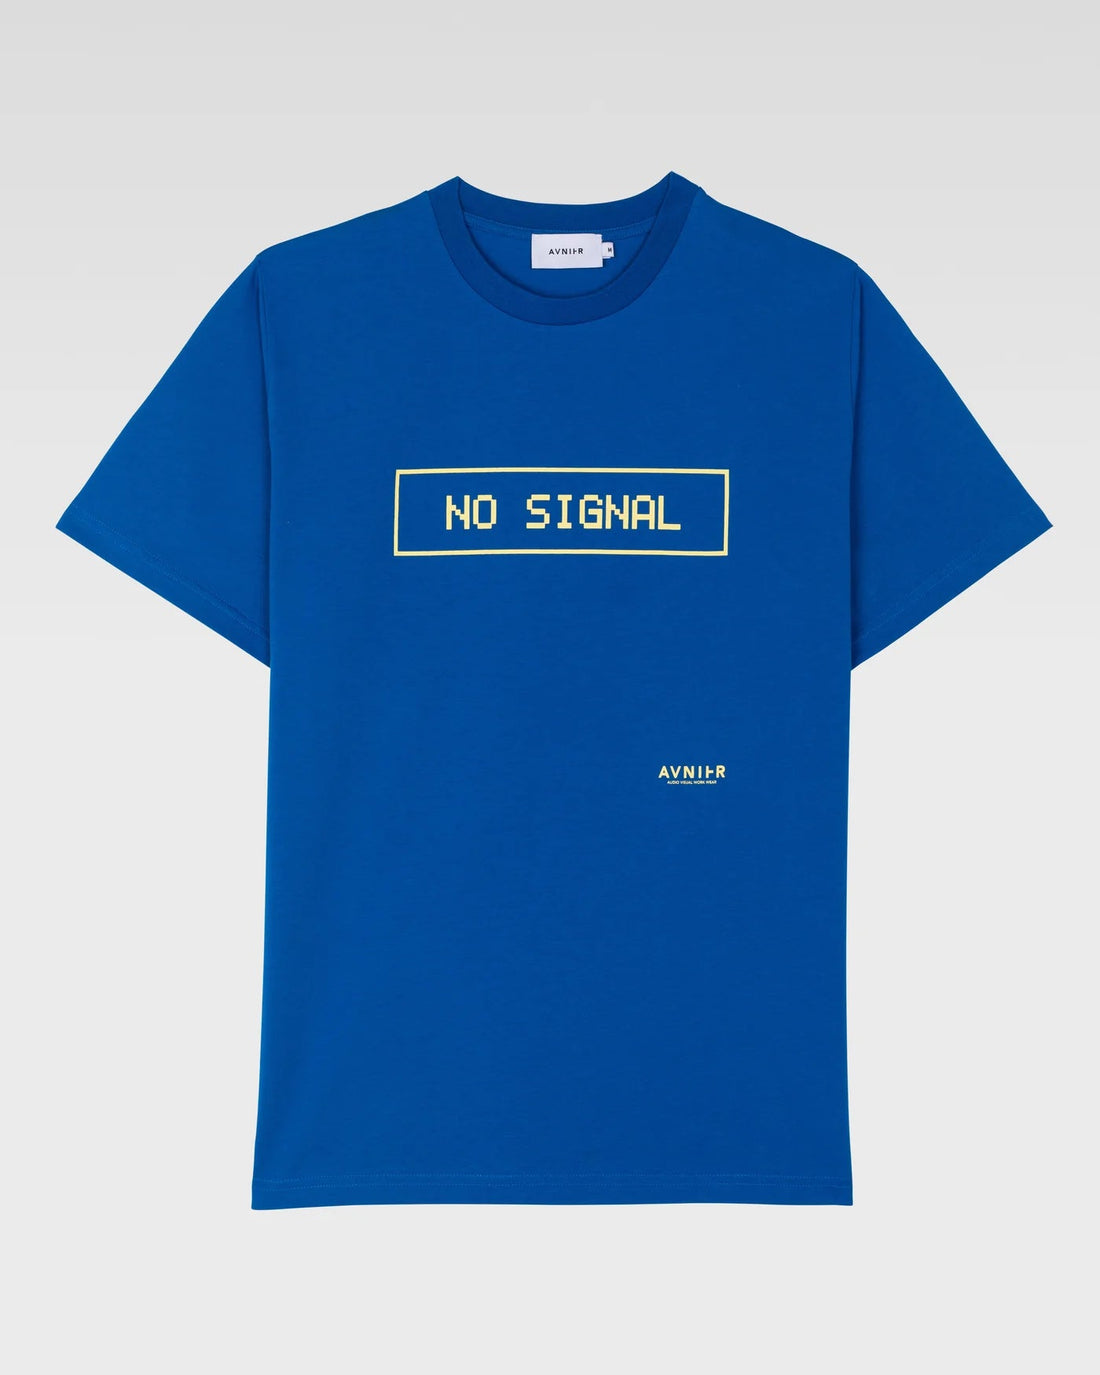 AVNIER • T-shirt Source Lapis Blue No Signal Hauts 